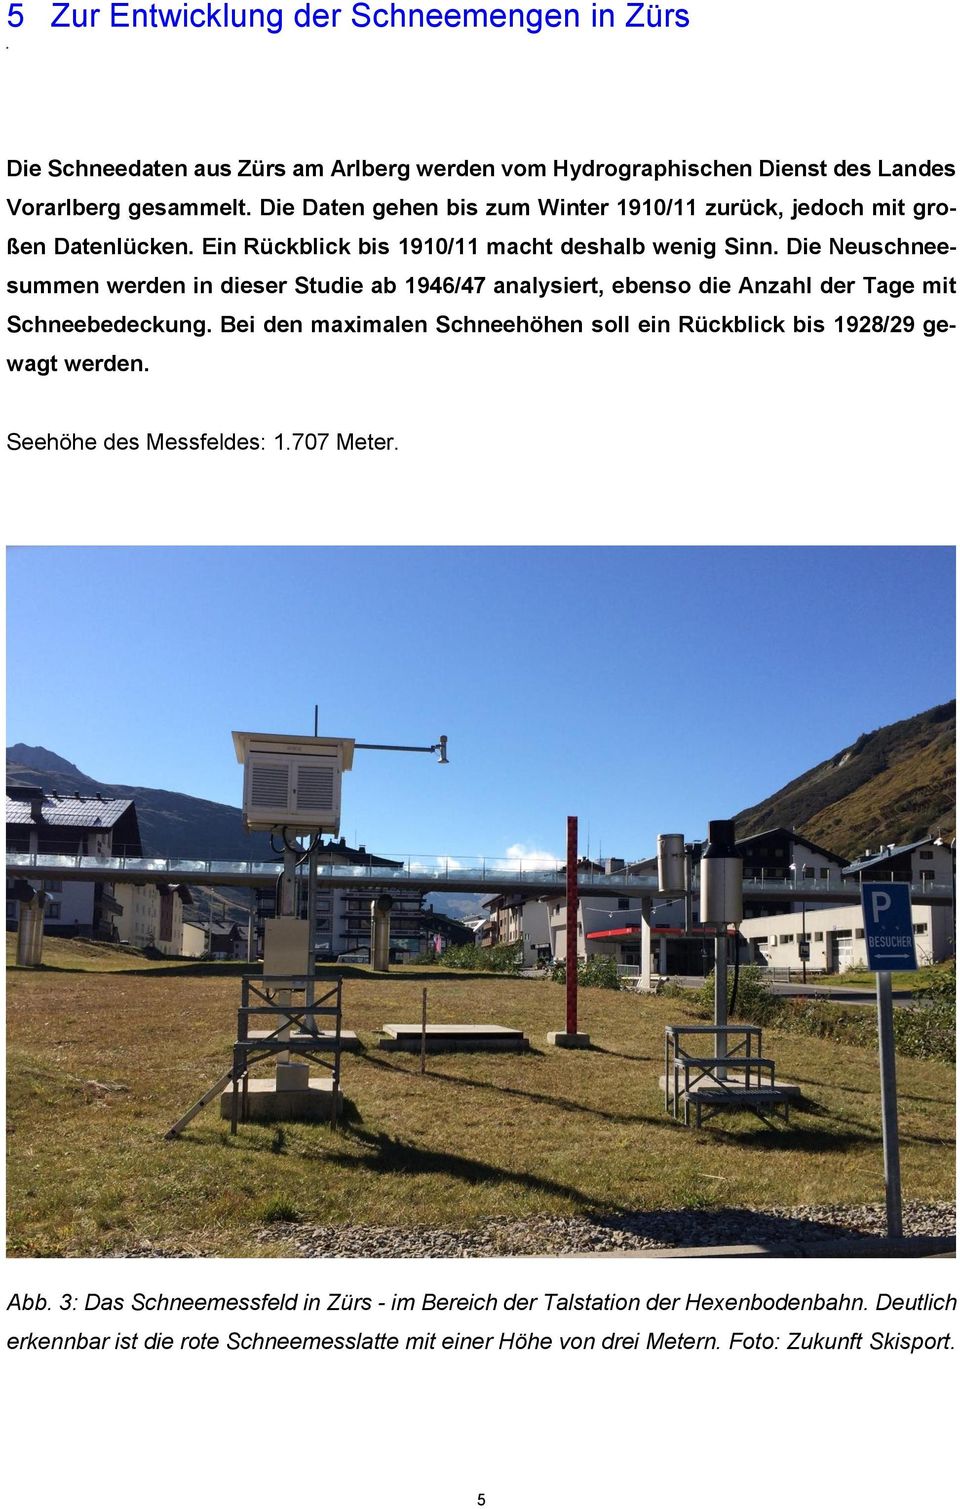 5 Zur Entwicklung der Schneemengen in Zürs Die Schneedaten aus Zürs am Arlberg werden vom Hydrographischen Dienst des Landes Vorarlberg gesammelt.